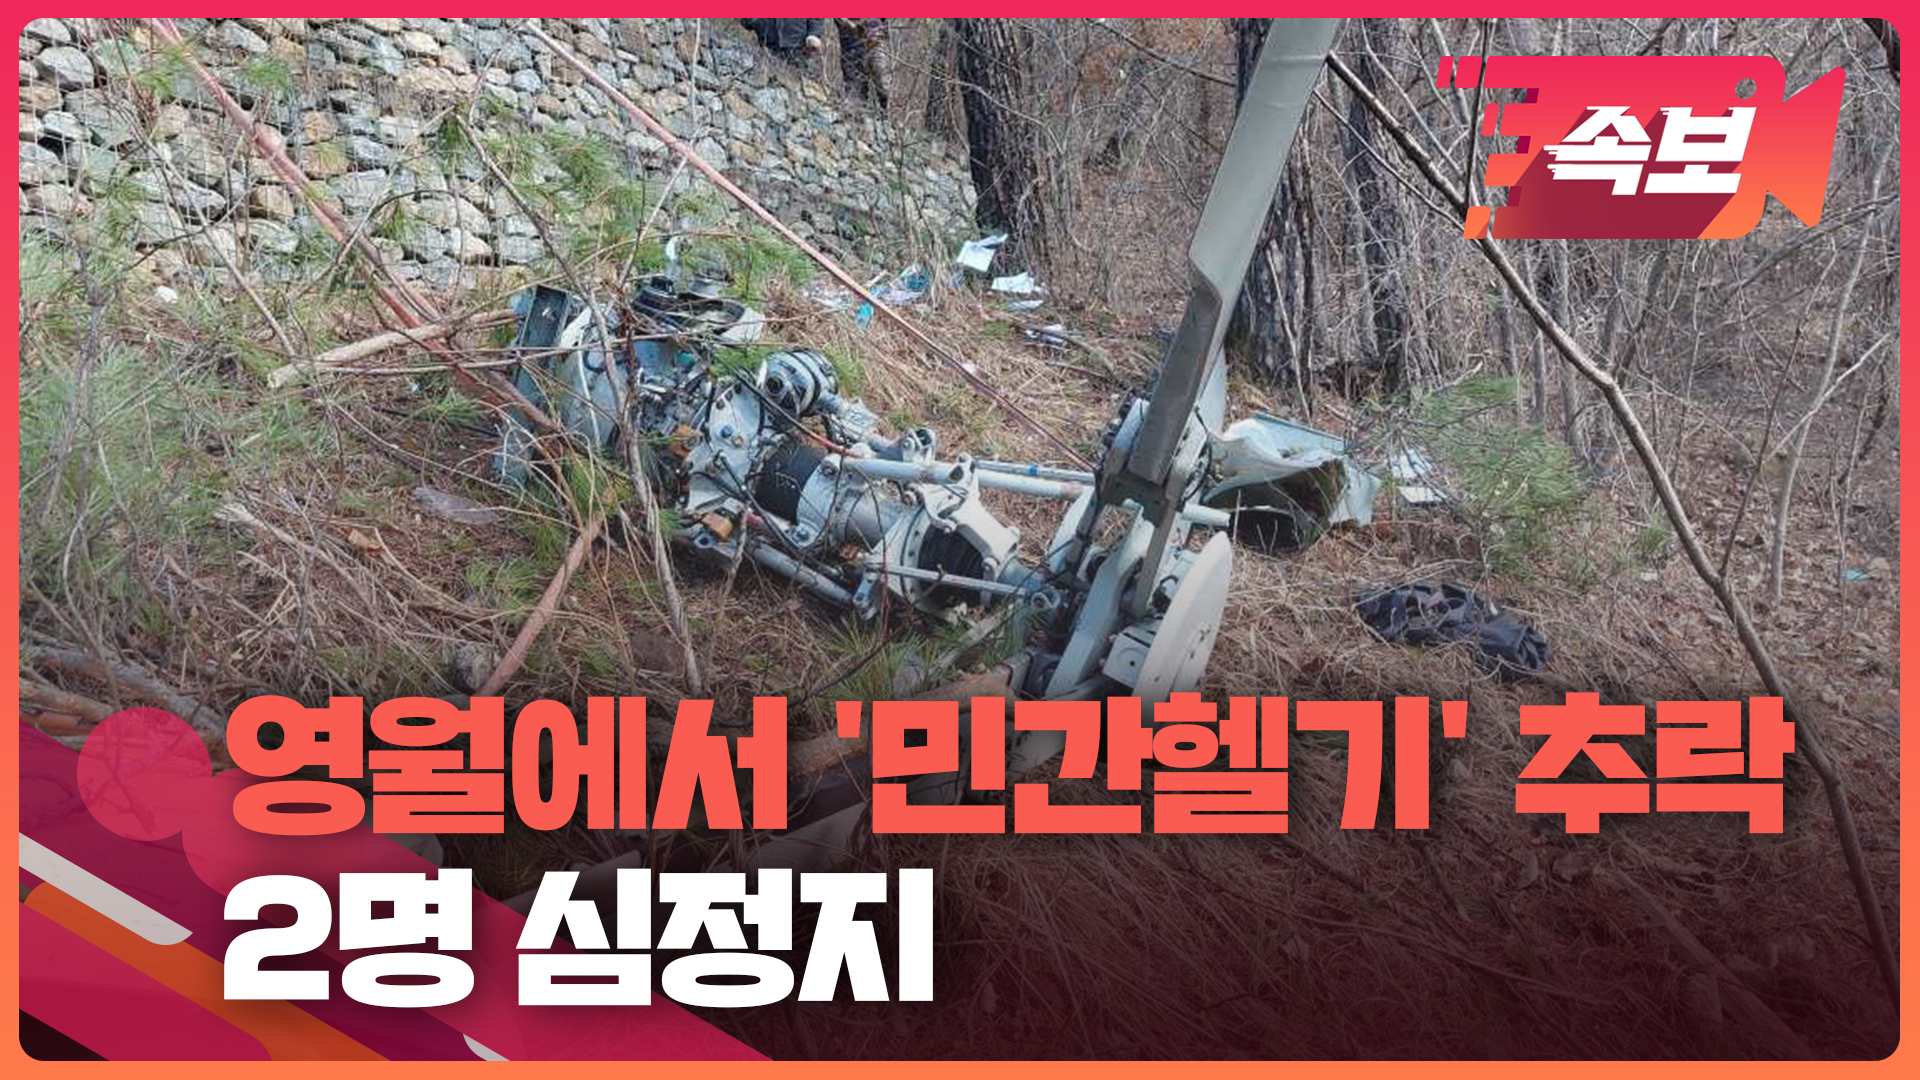 [속보영상] 영월서 민간헬기 추락 2명 심정지…송전탑 공사 중 사고 추정